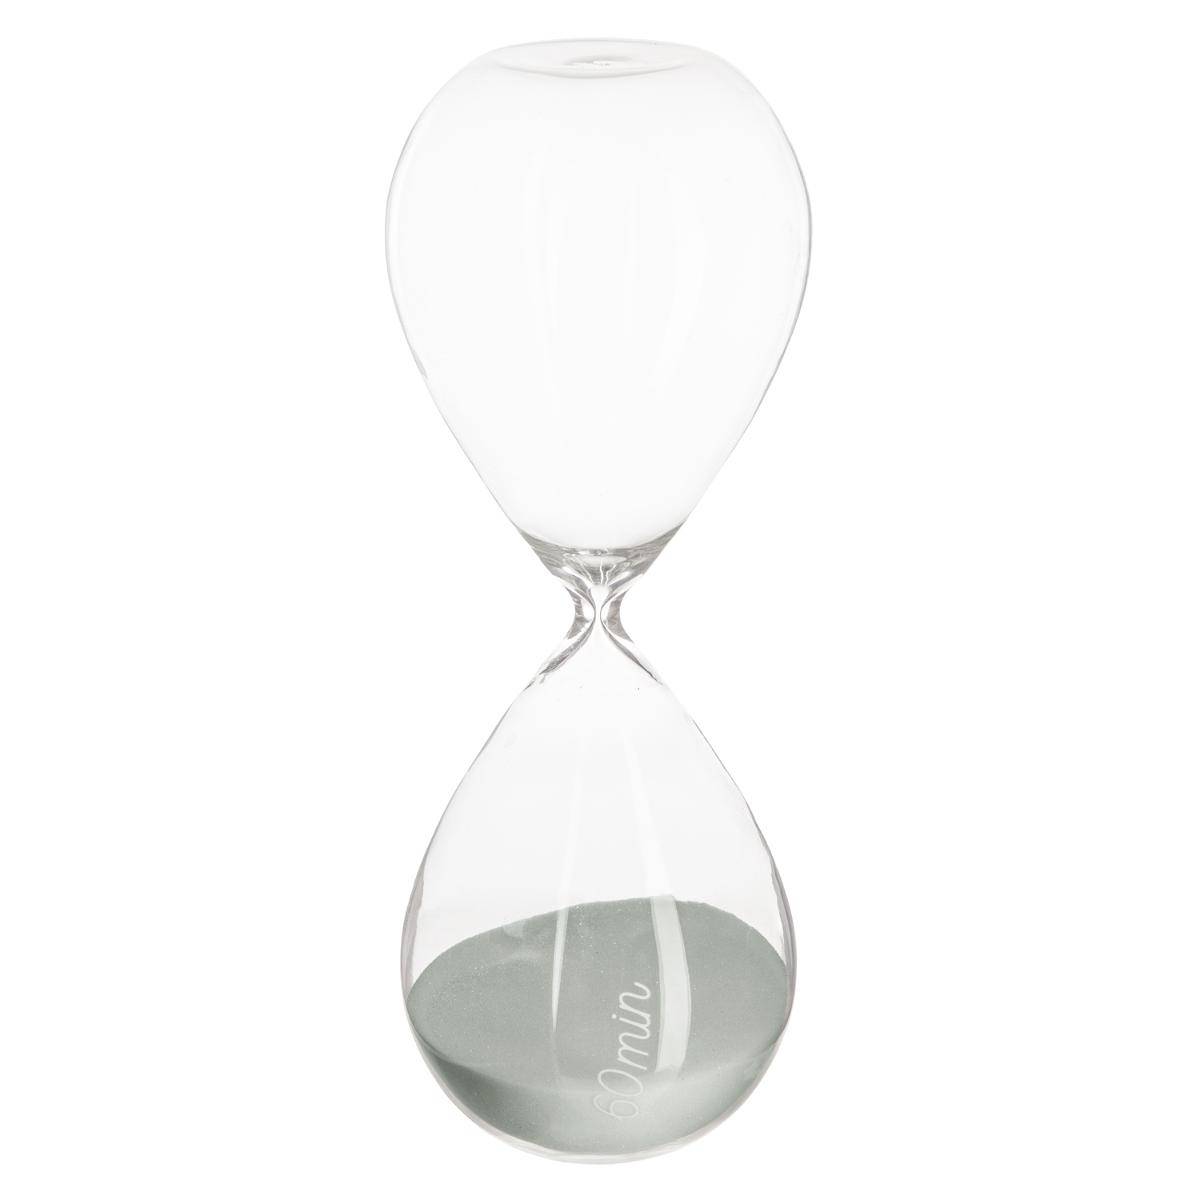 Reloj de arena Haus de vidrio